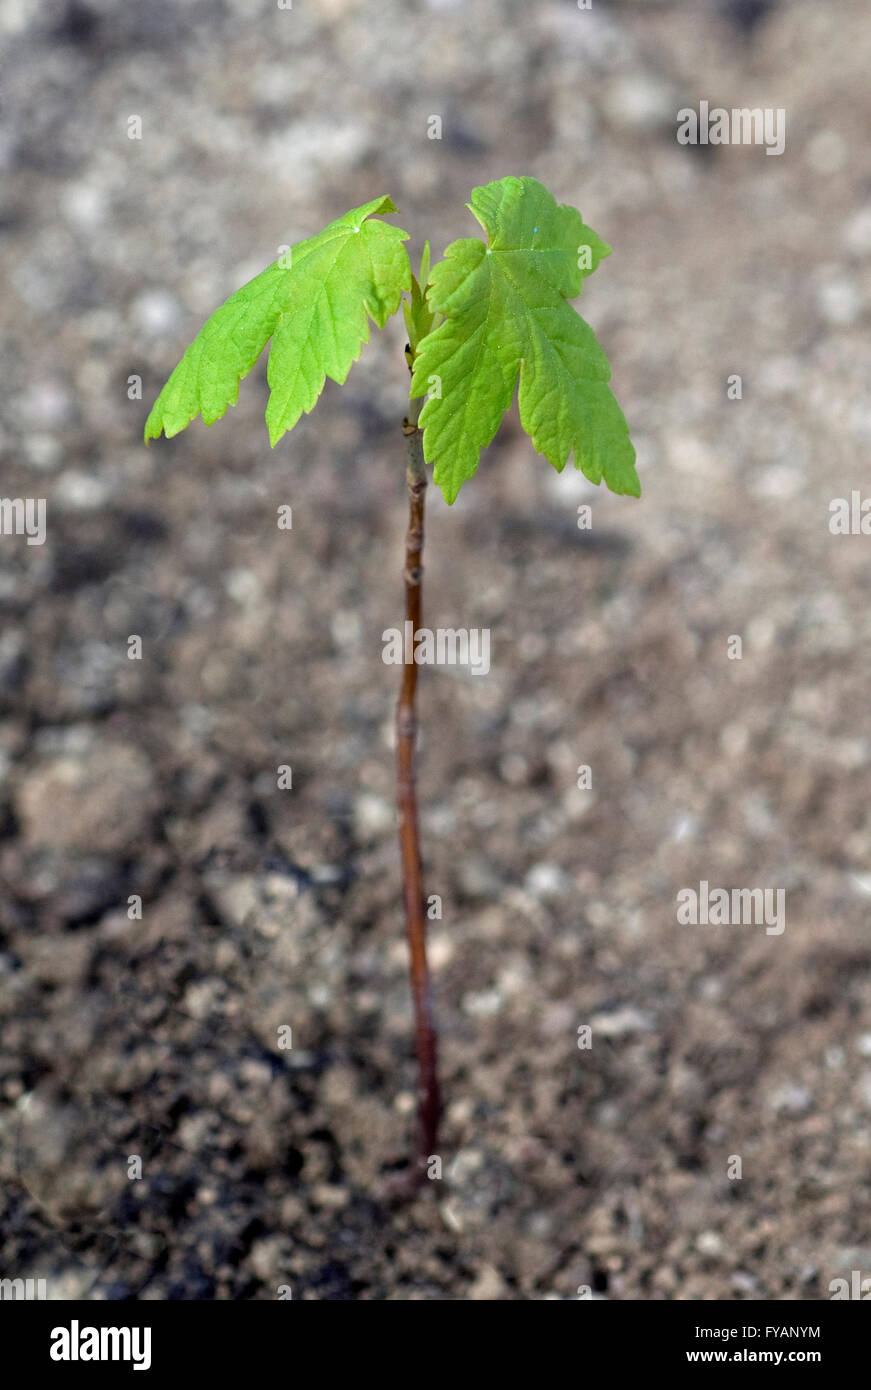 Ahornsproessling, Ahorn, Acer, ist ein Nutzbaum Foto Stock